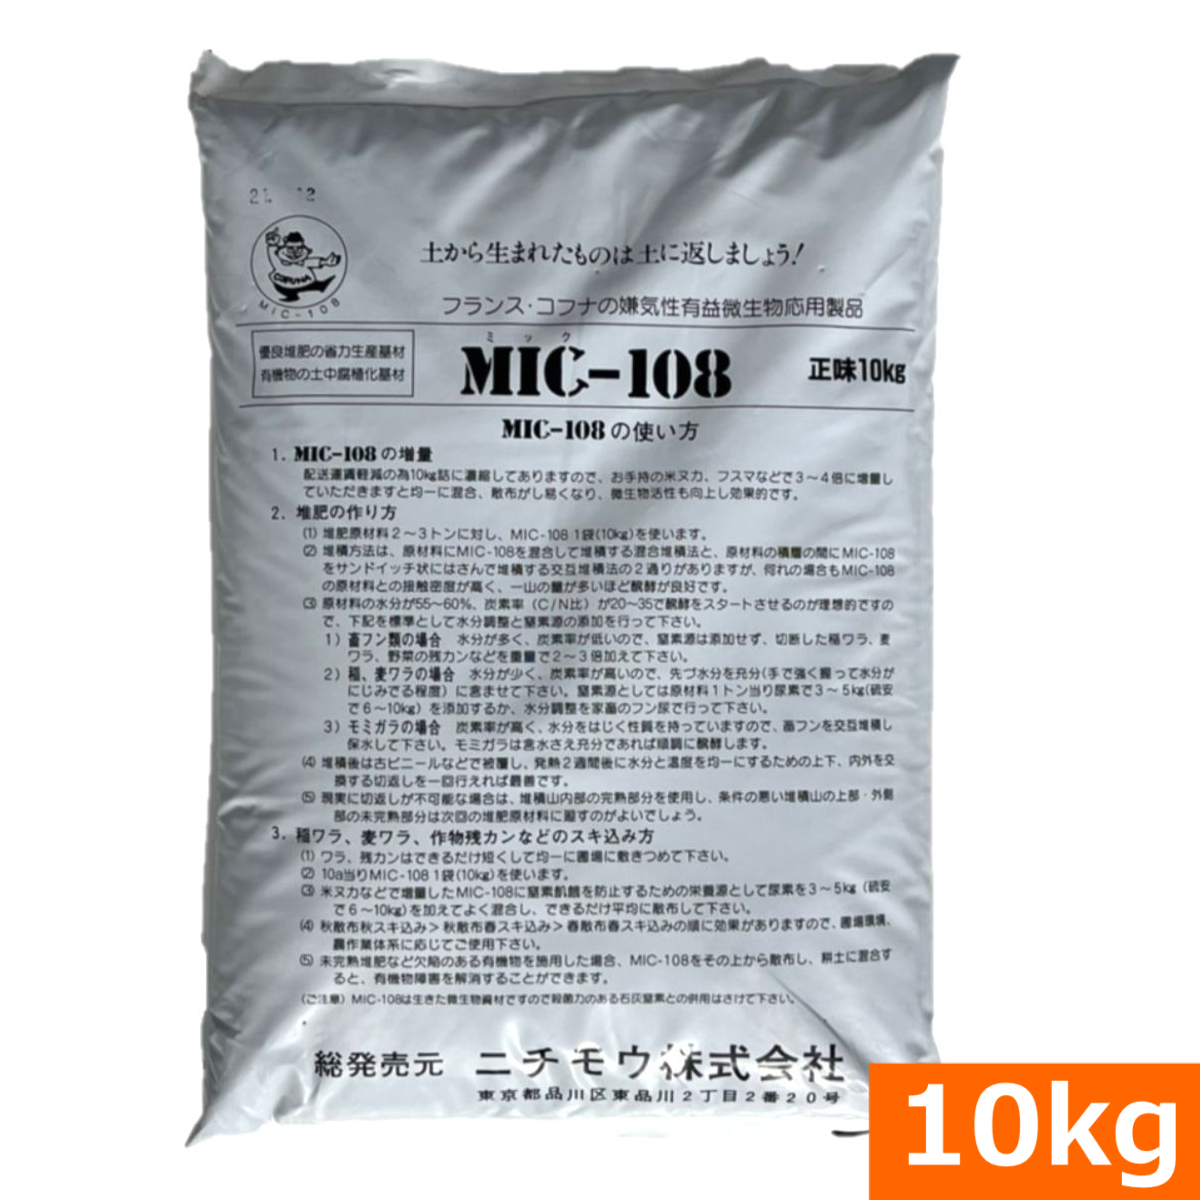 フランス・コフナの嫌気性有益微生物応用製品　MIC-108（10kg）